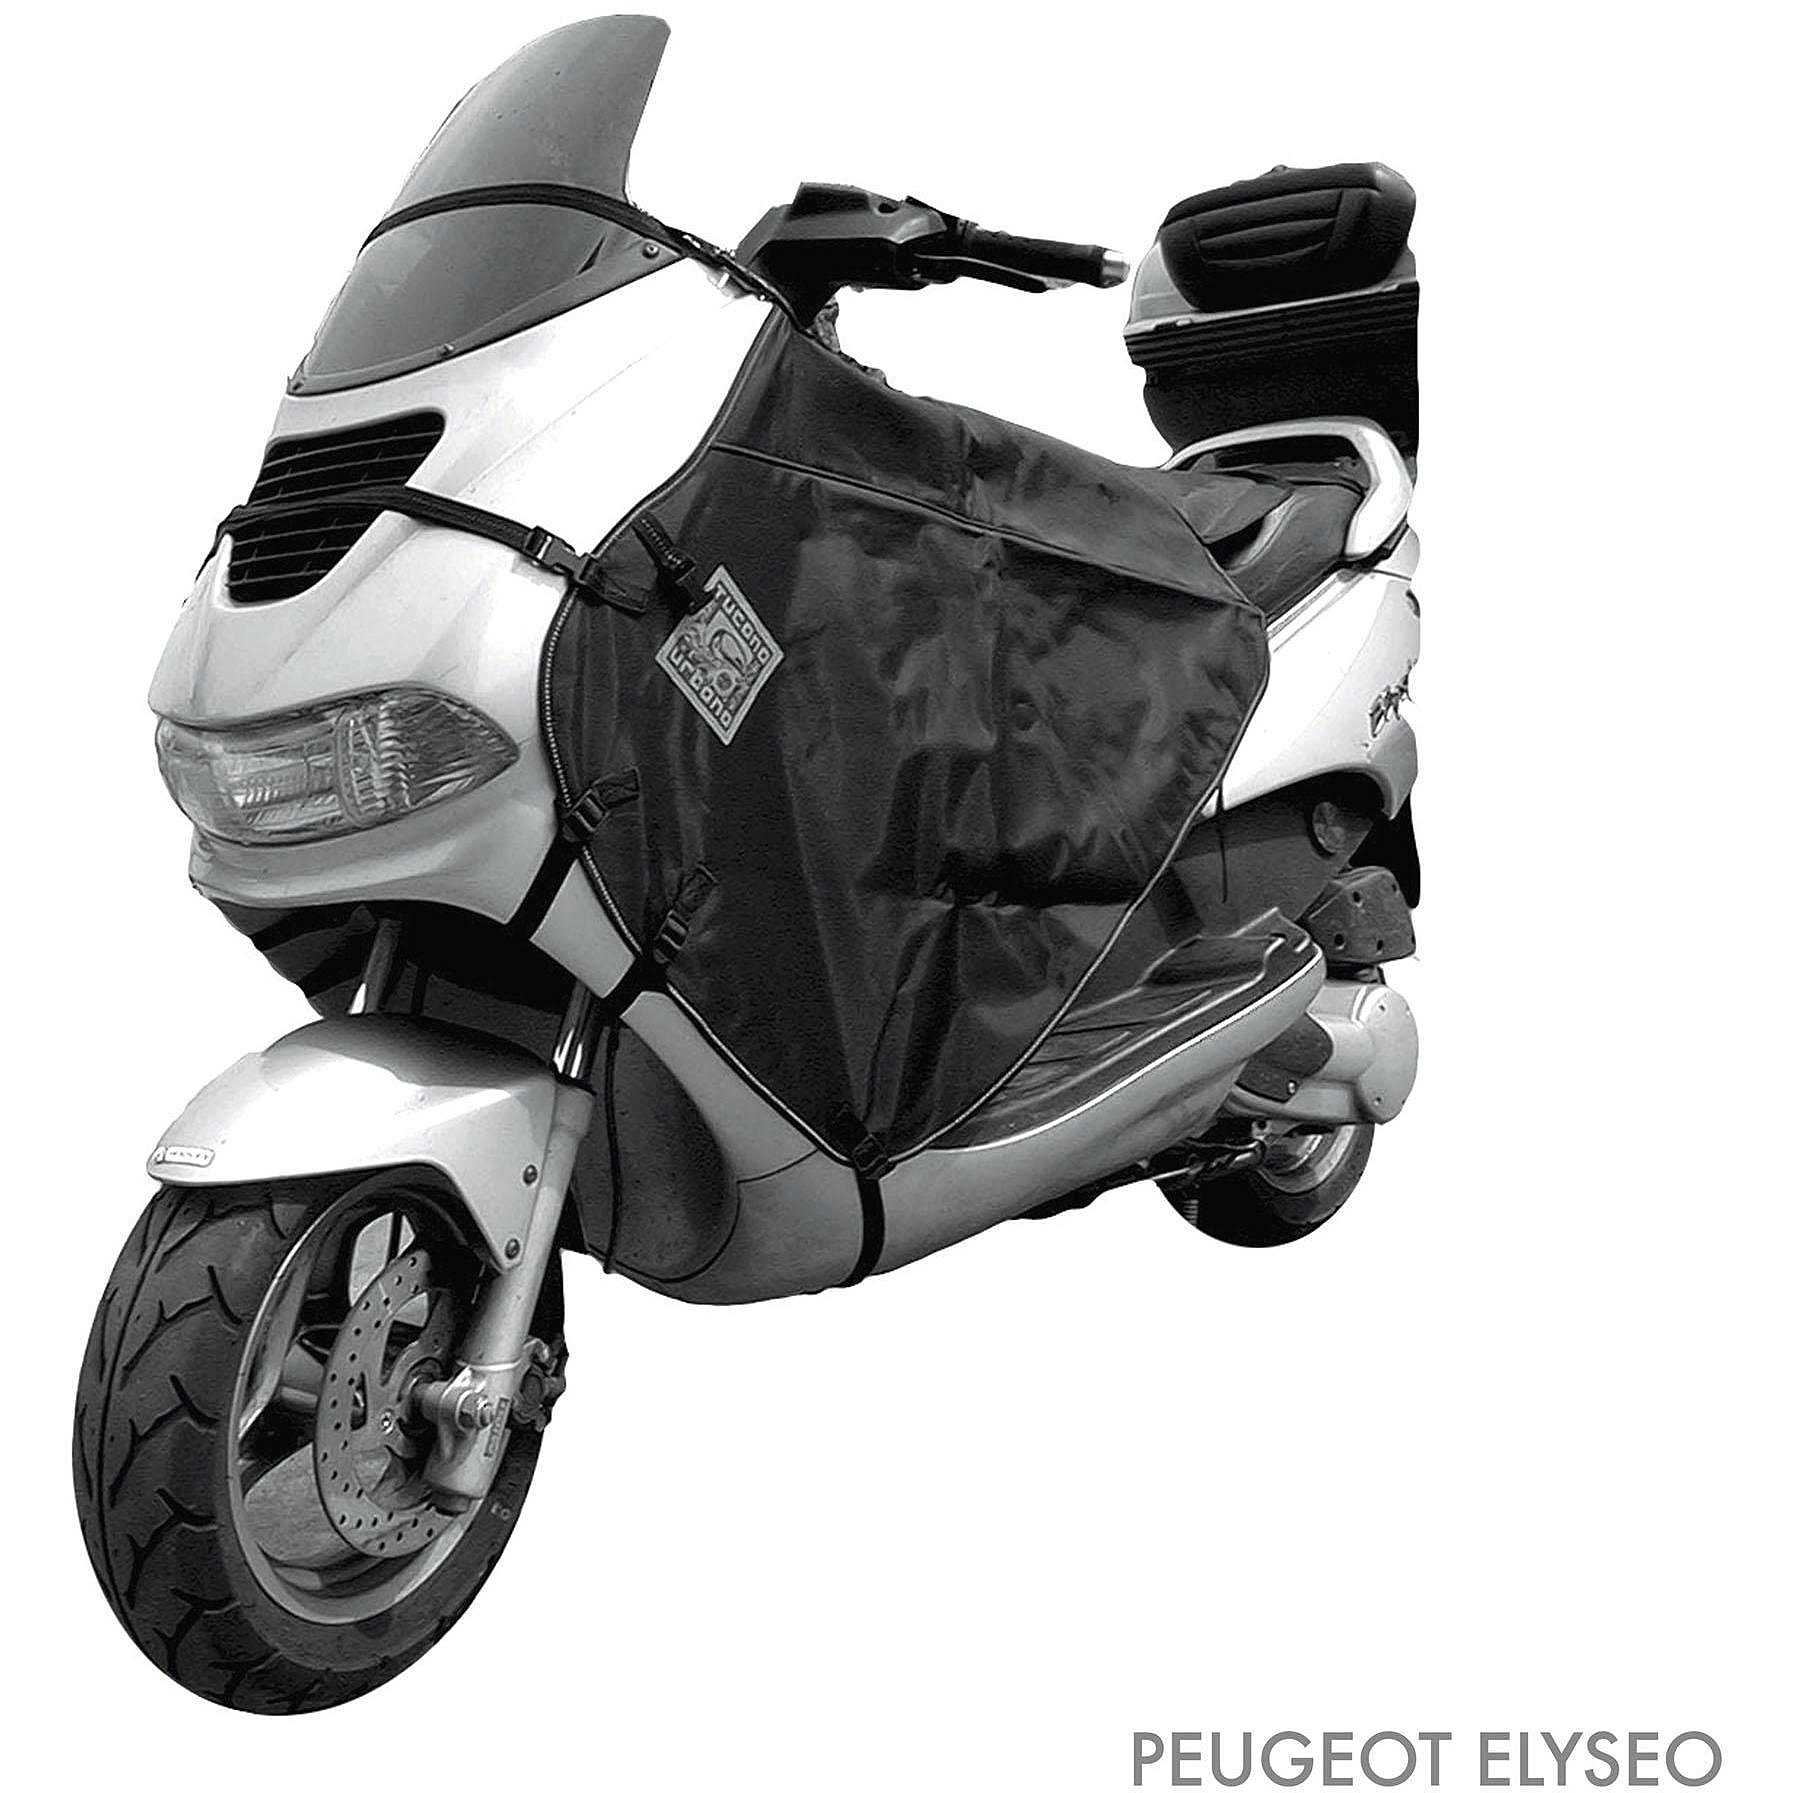 Termoscudo Coprigambe Moto Scooter Tucano Urbano R031X Per vari Modelli  (Verifica nella descrizione i modelli su cui è applicabile) Vendita Online  